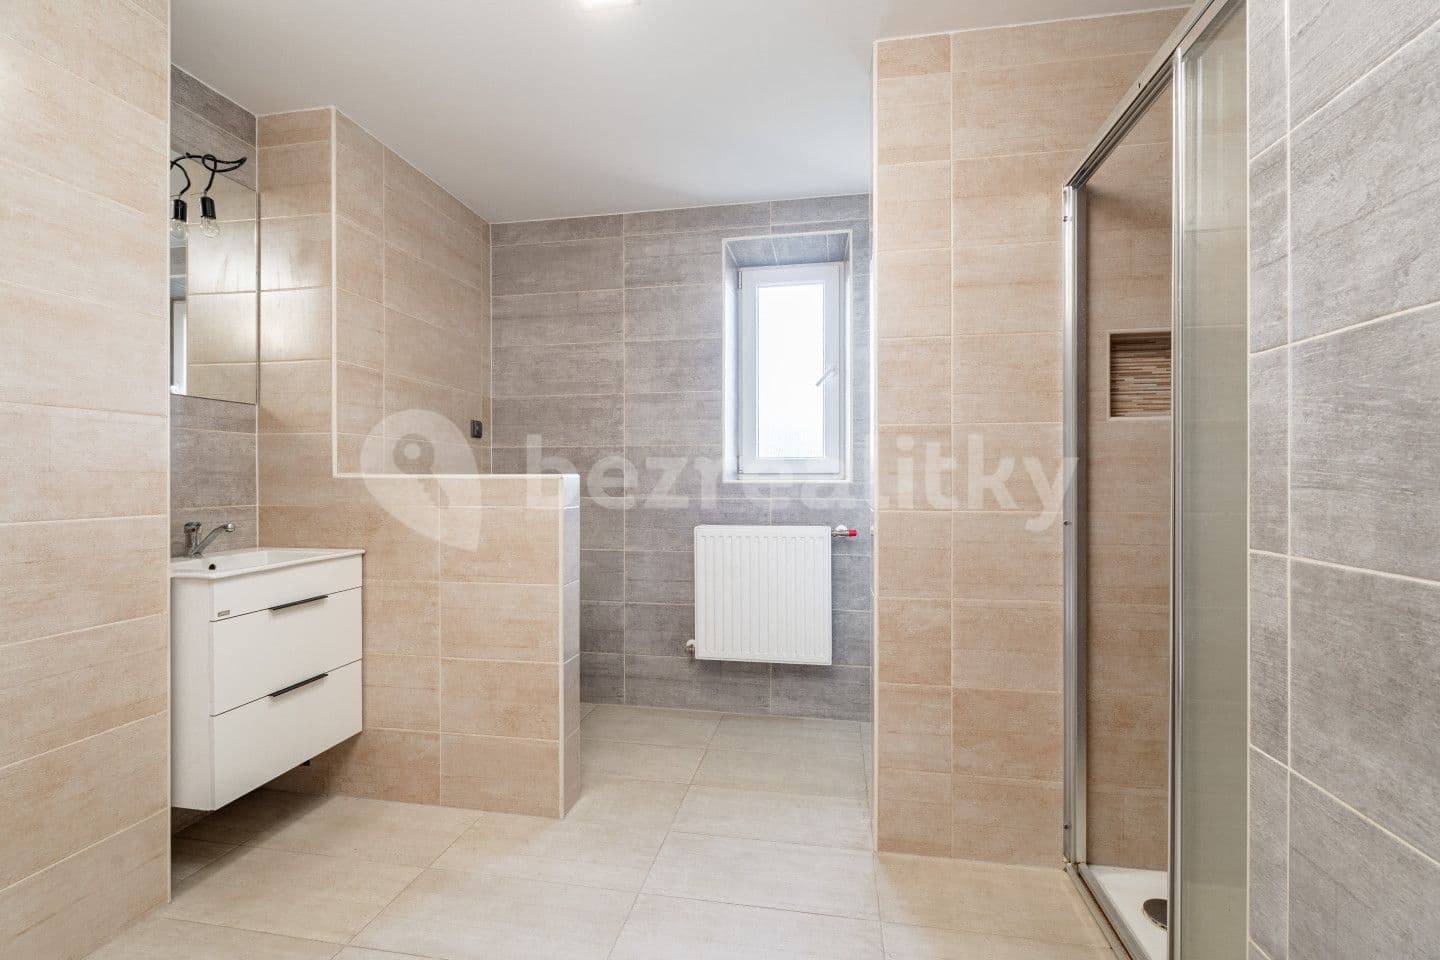 2 bedroom flat for sale, 55 m², Kozlov, Vysočina Region